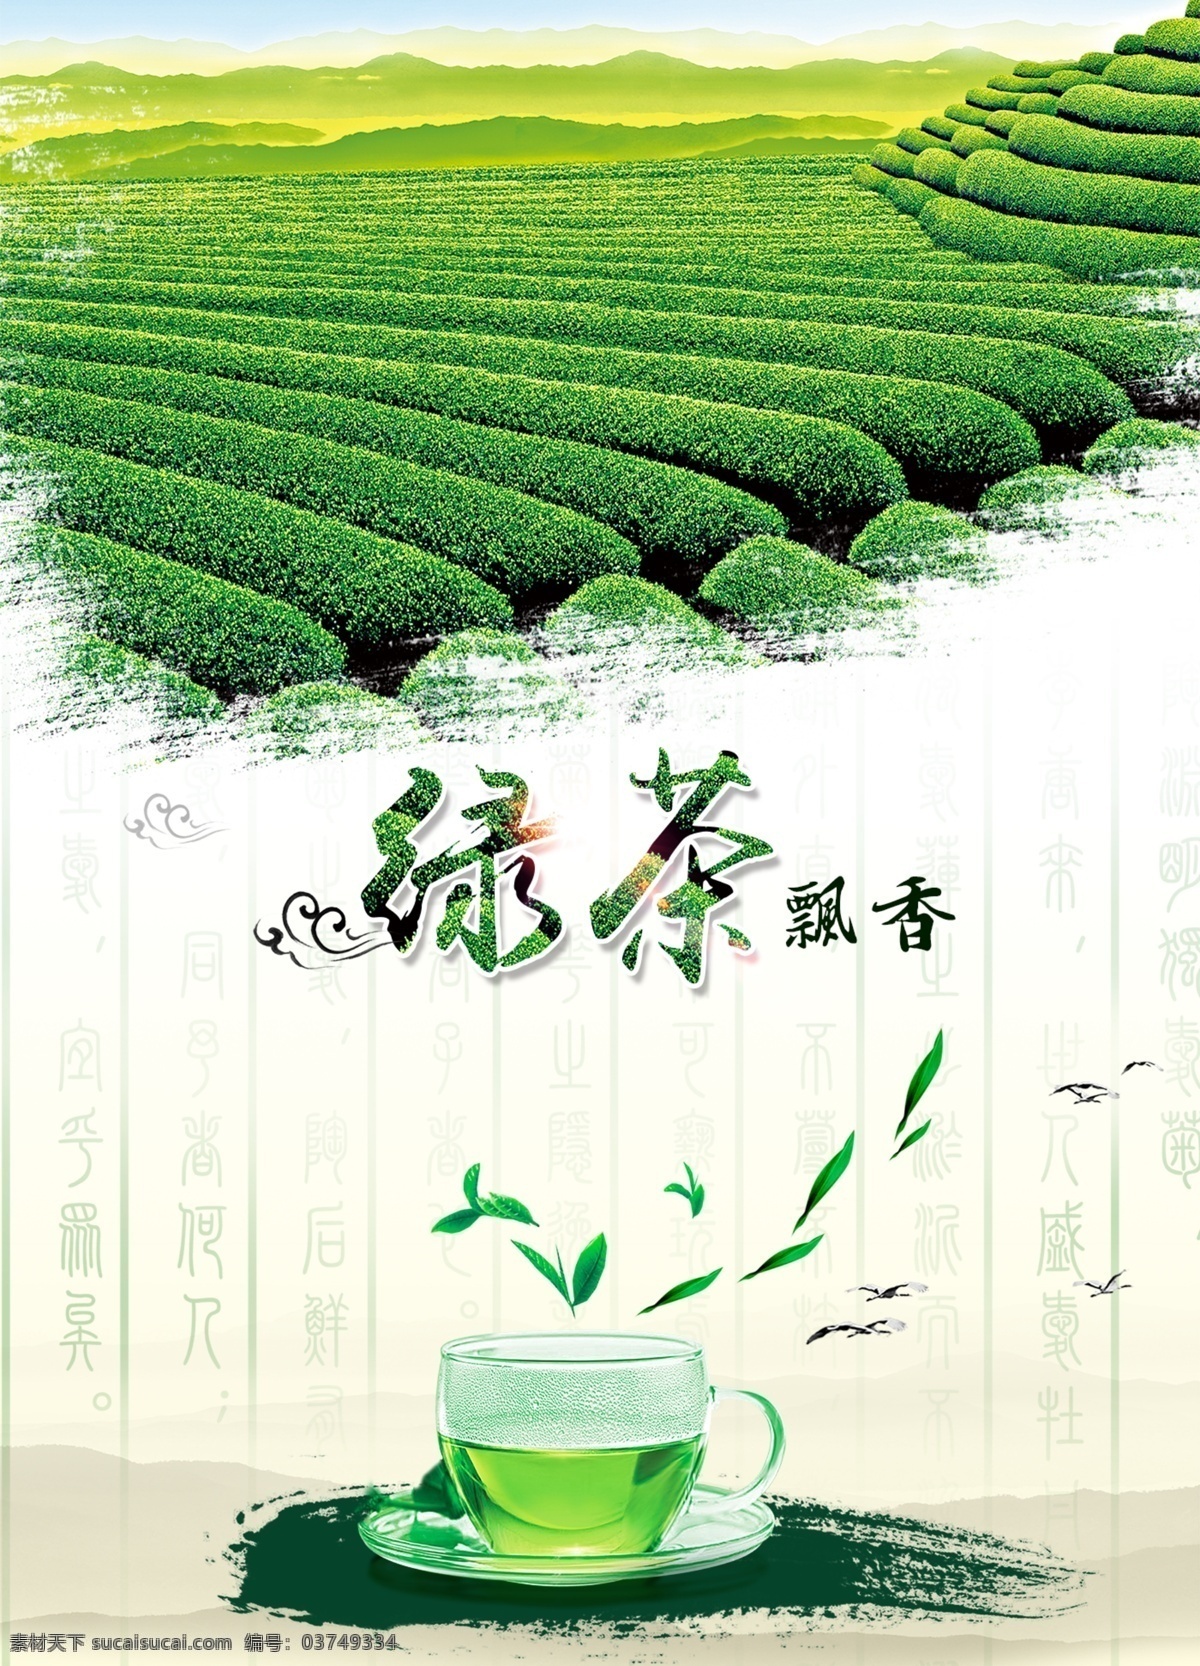 绿茶 茶叶 清新海报 绿茶清新 绿茶海报 茶叶海报 宣传海报 农业海报